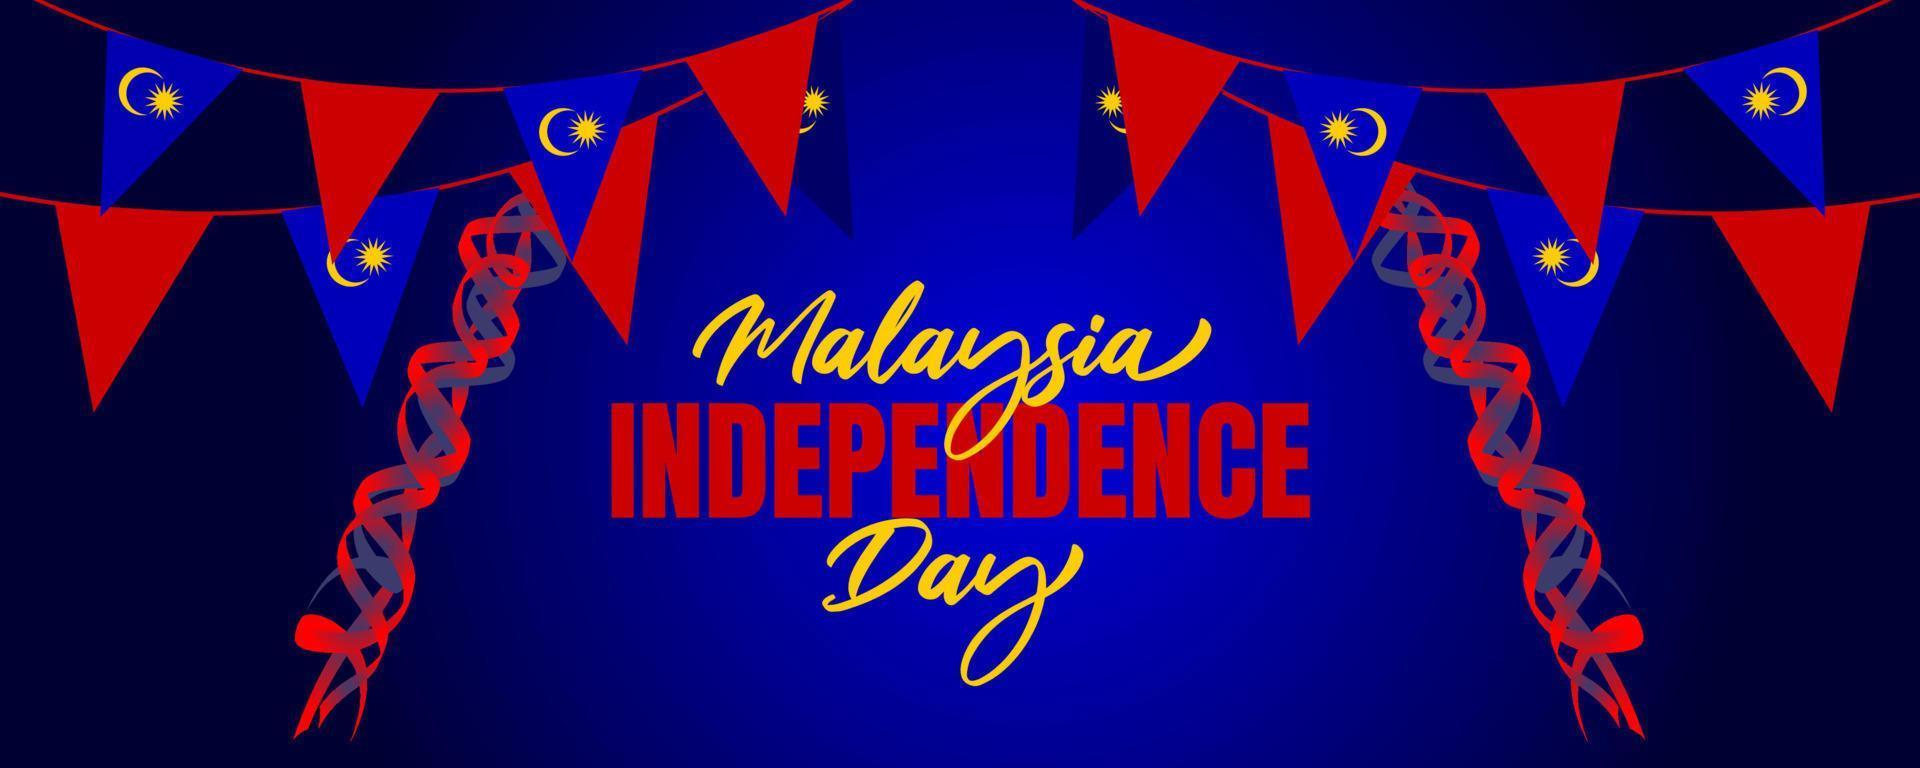 fête de l'indépendance de la malaisie avec design de fond 3d agitant le drapeau vecteur